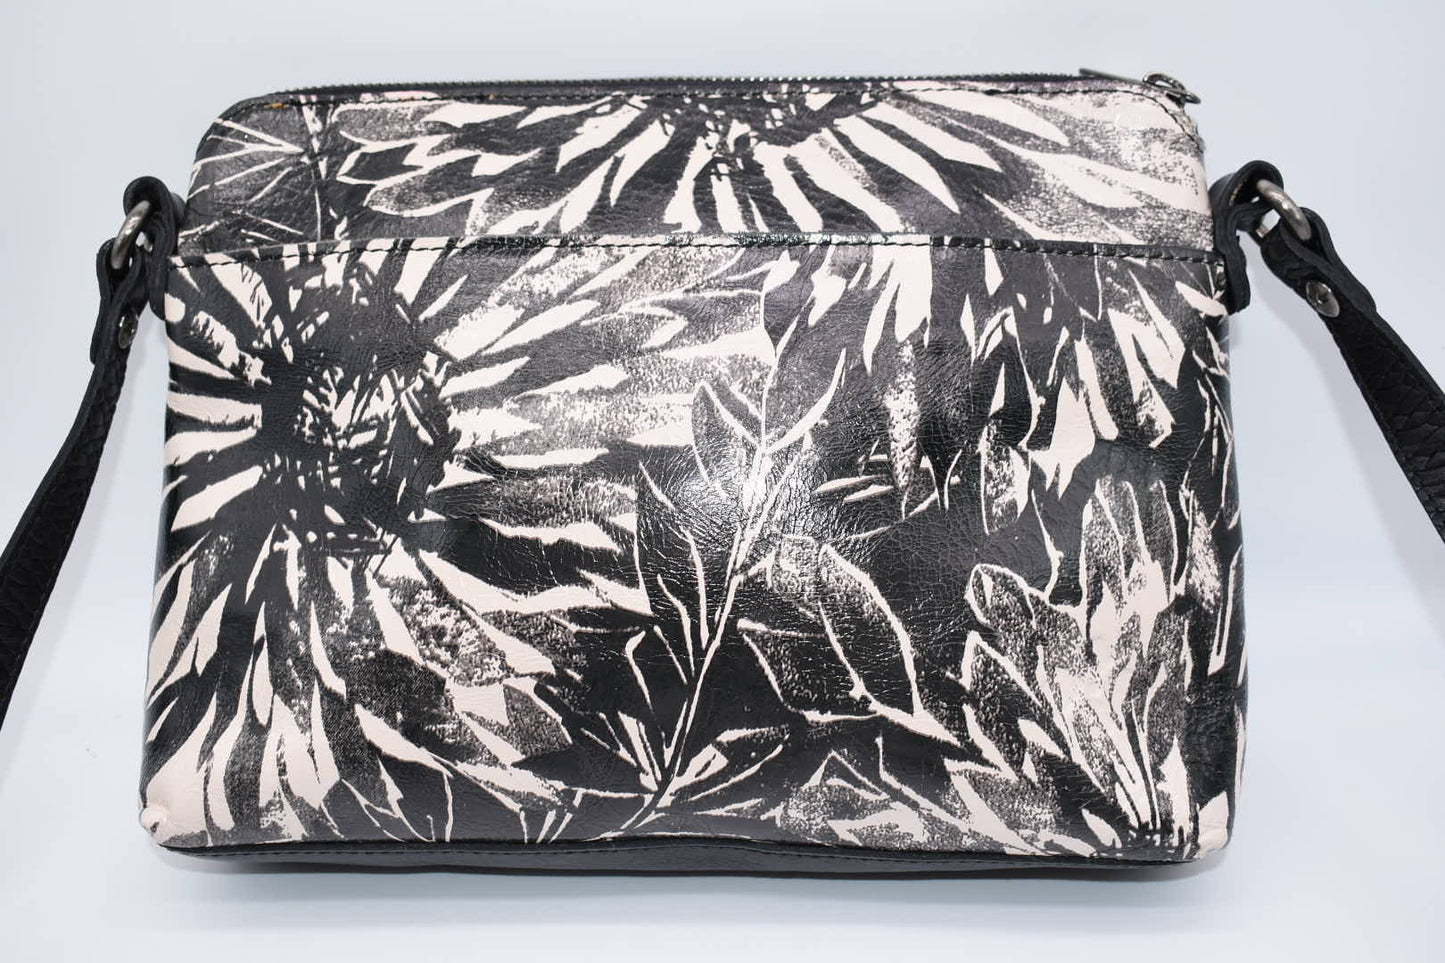 Patricia Nash Avellino Crossbody Bag in Sunflower Print